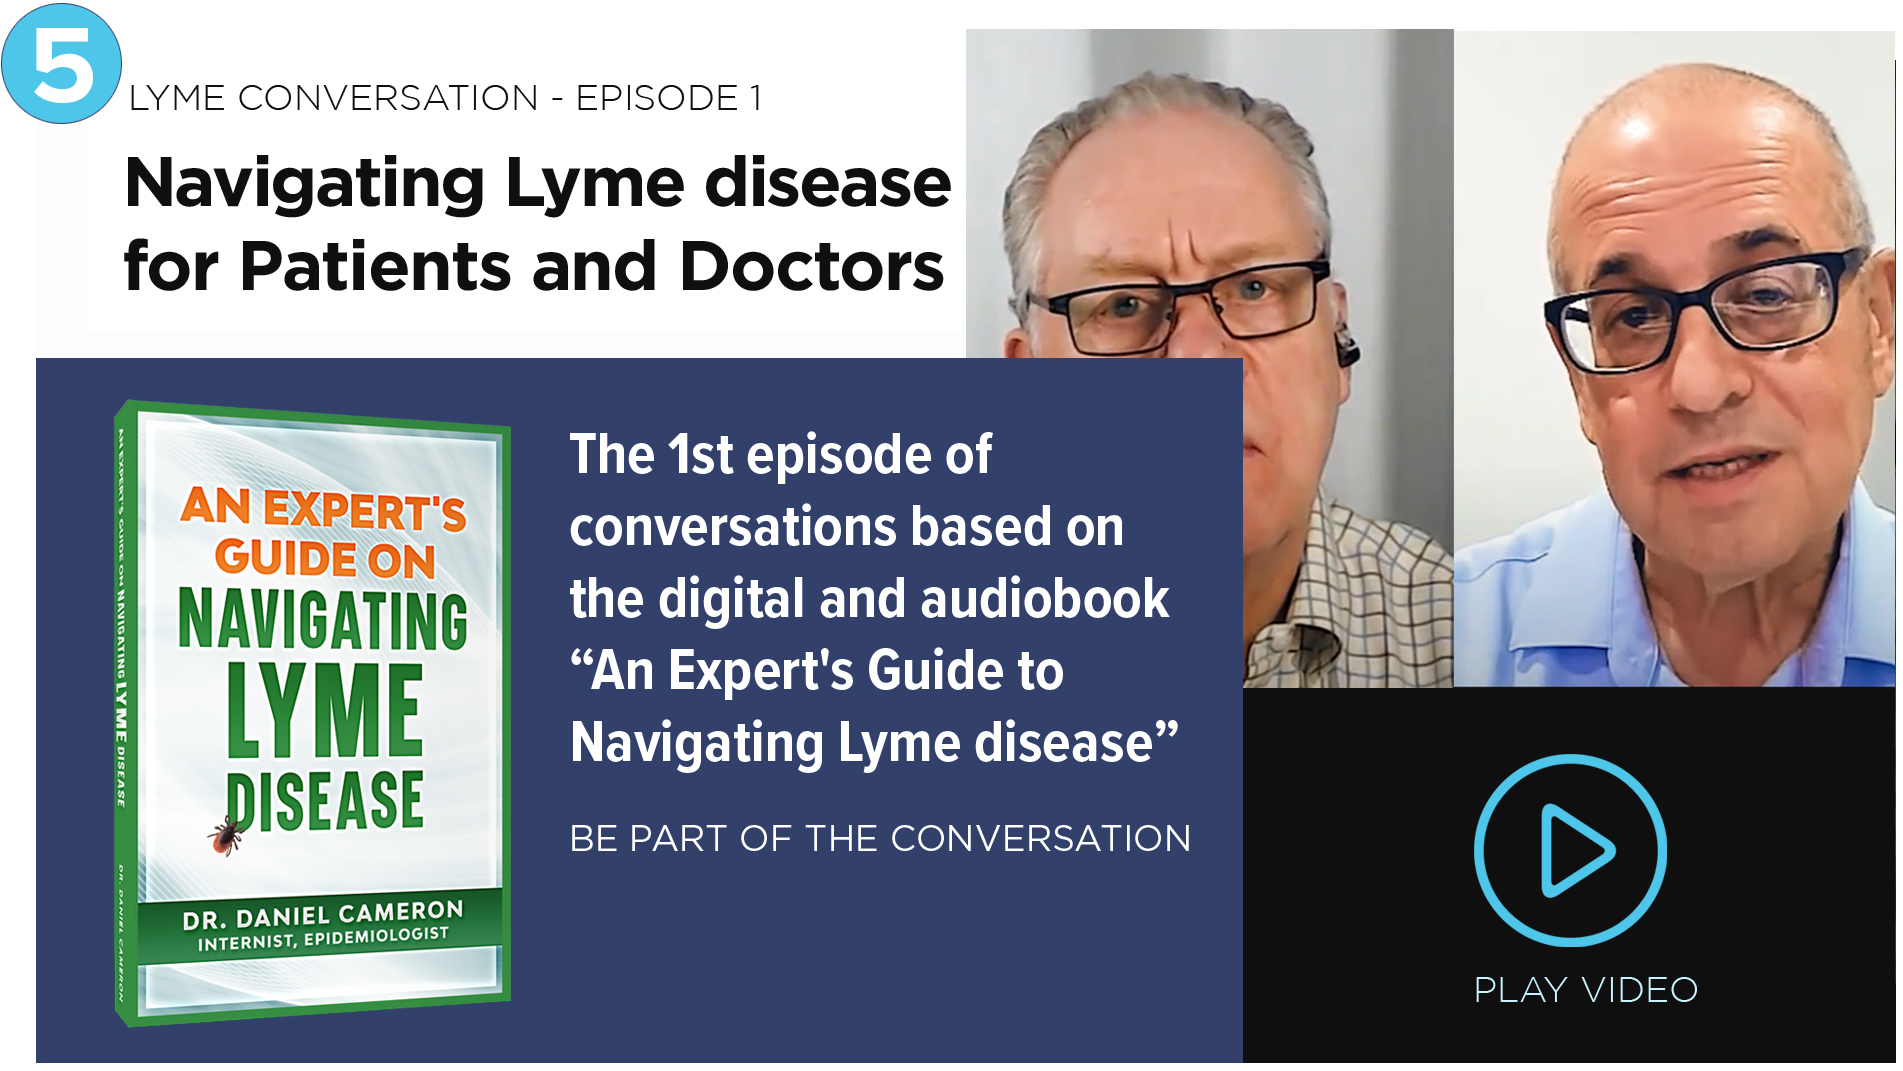 Conversation Episode 1 Lyme disease